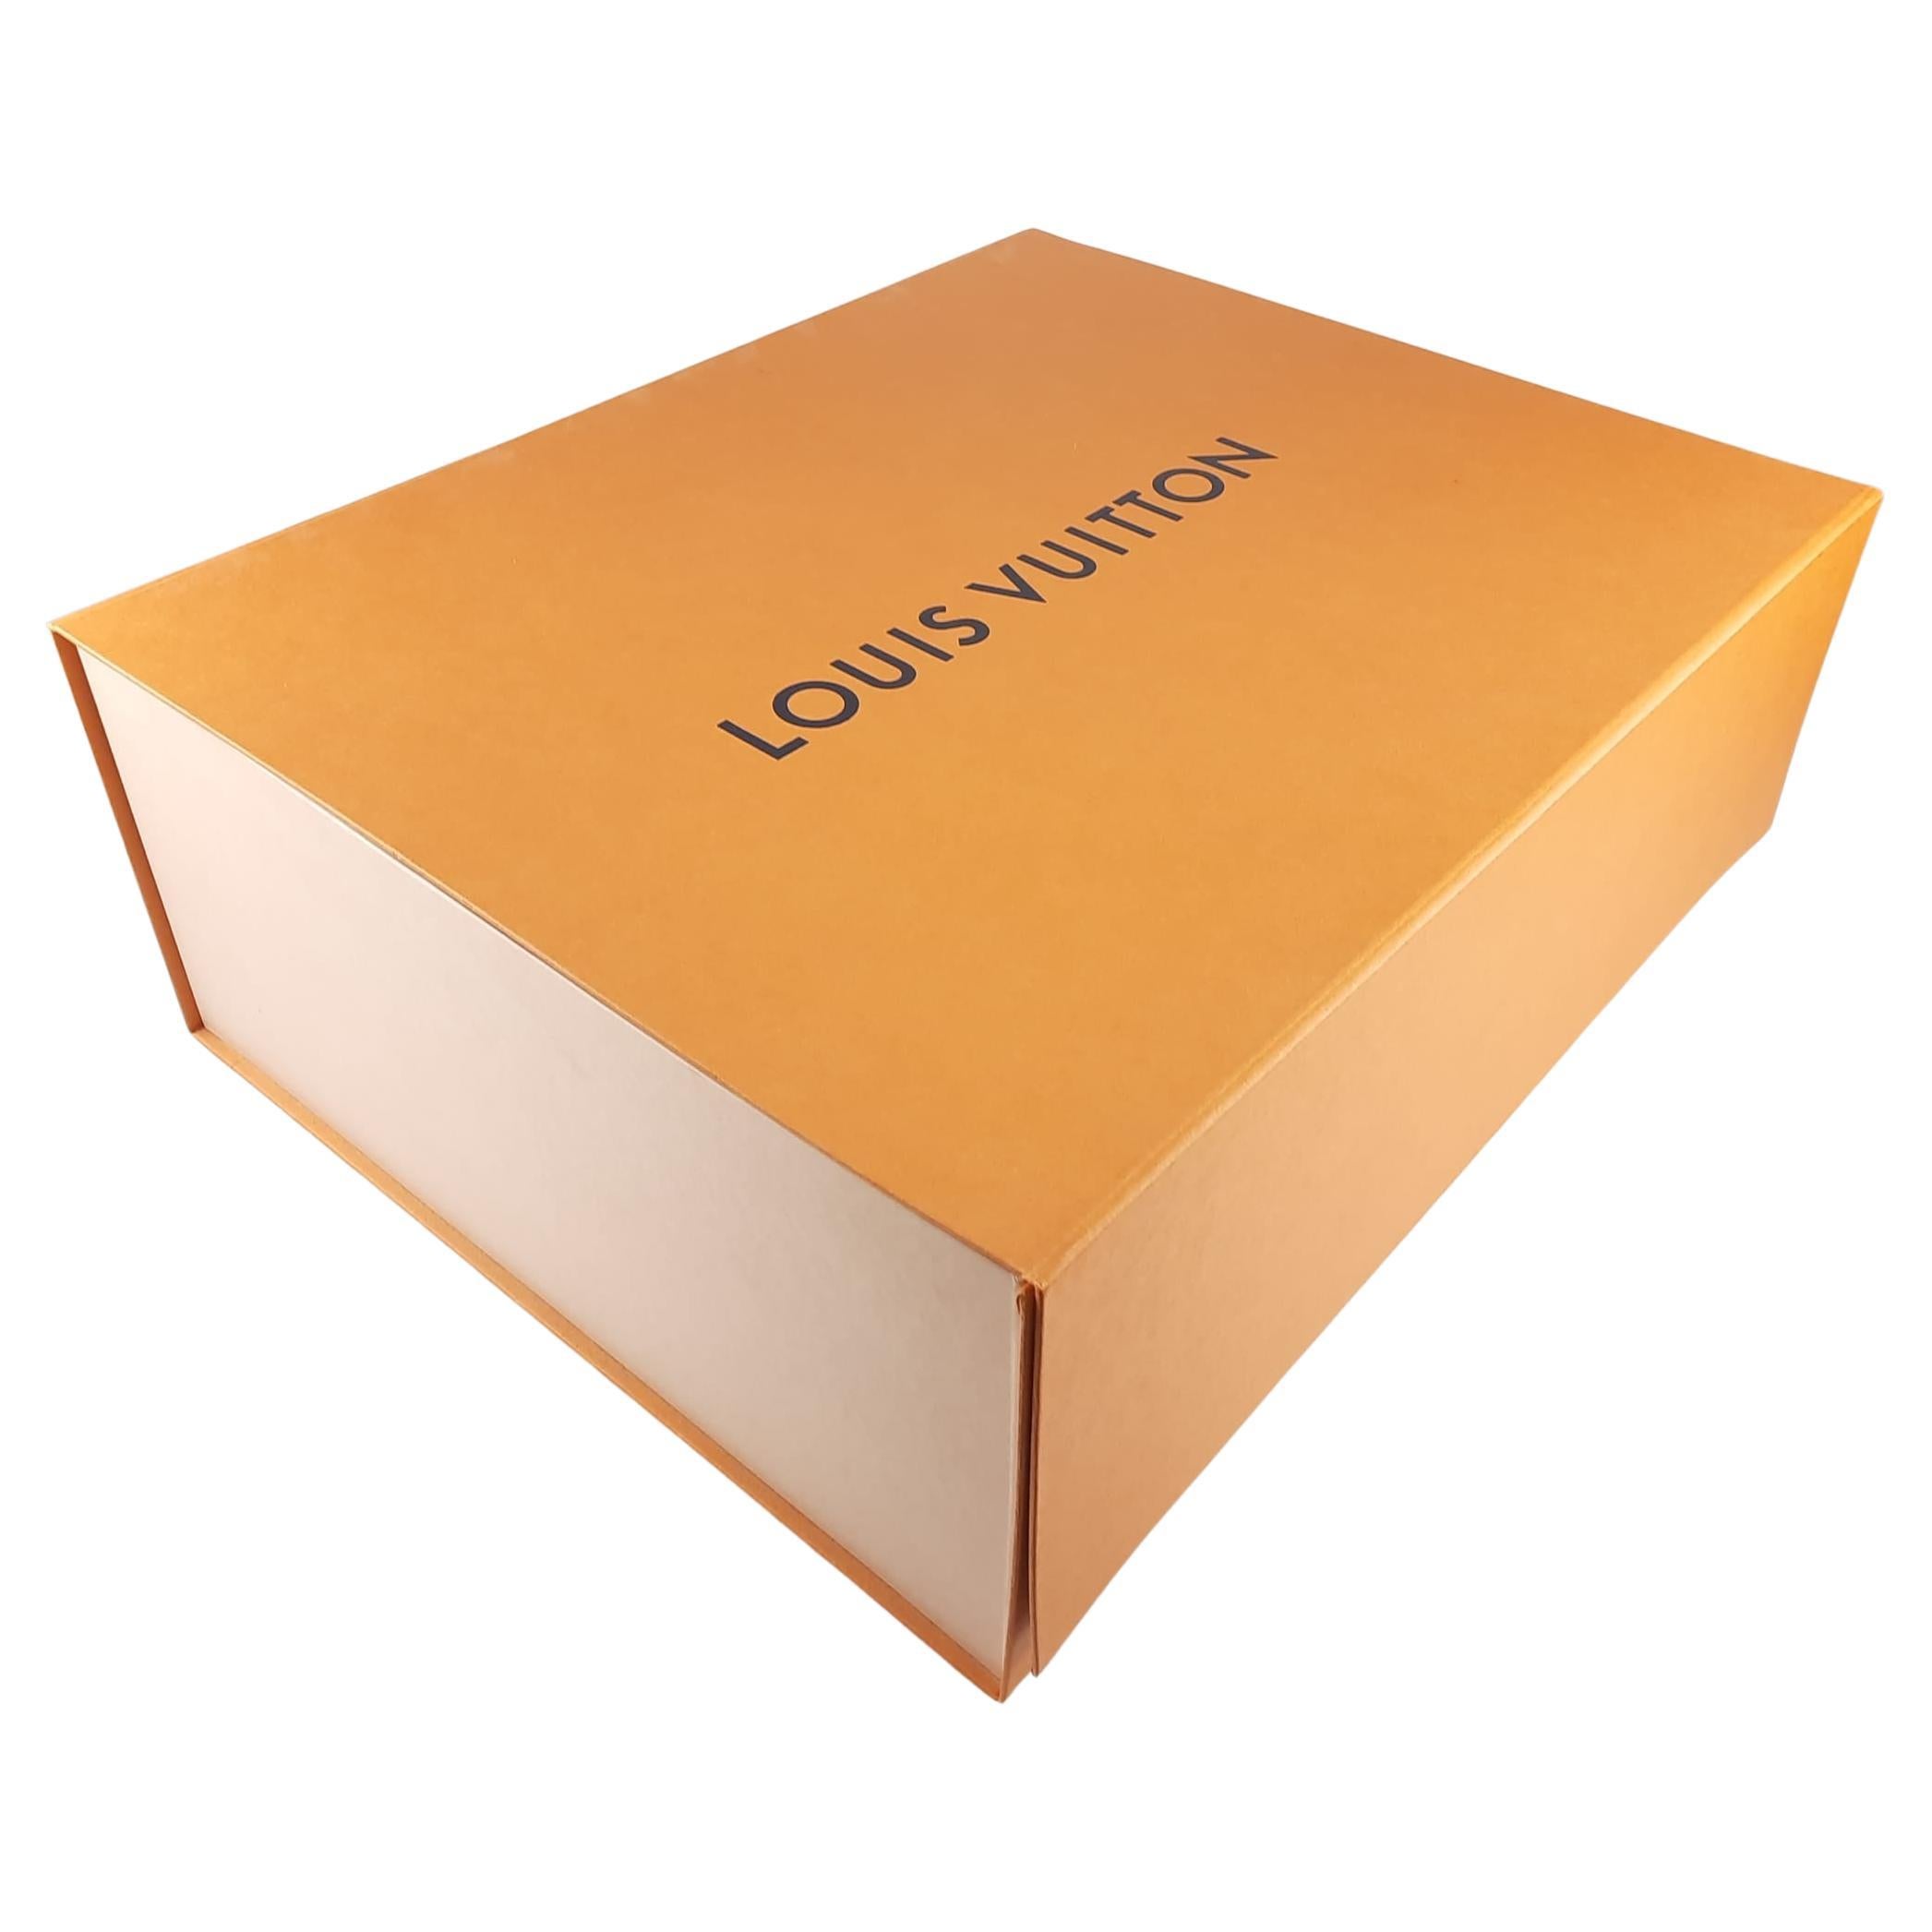 packaging authentic louis vuitton orange box